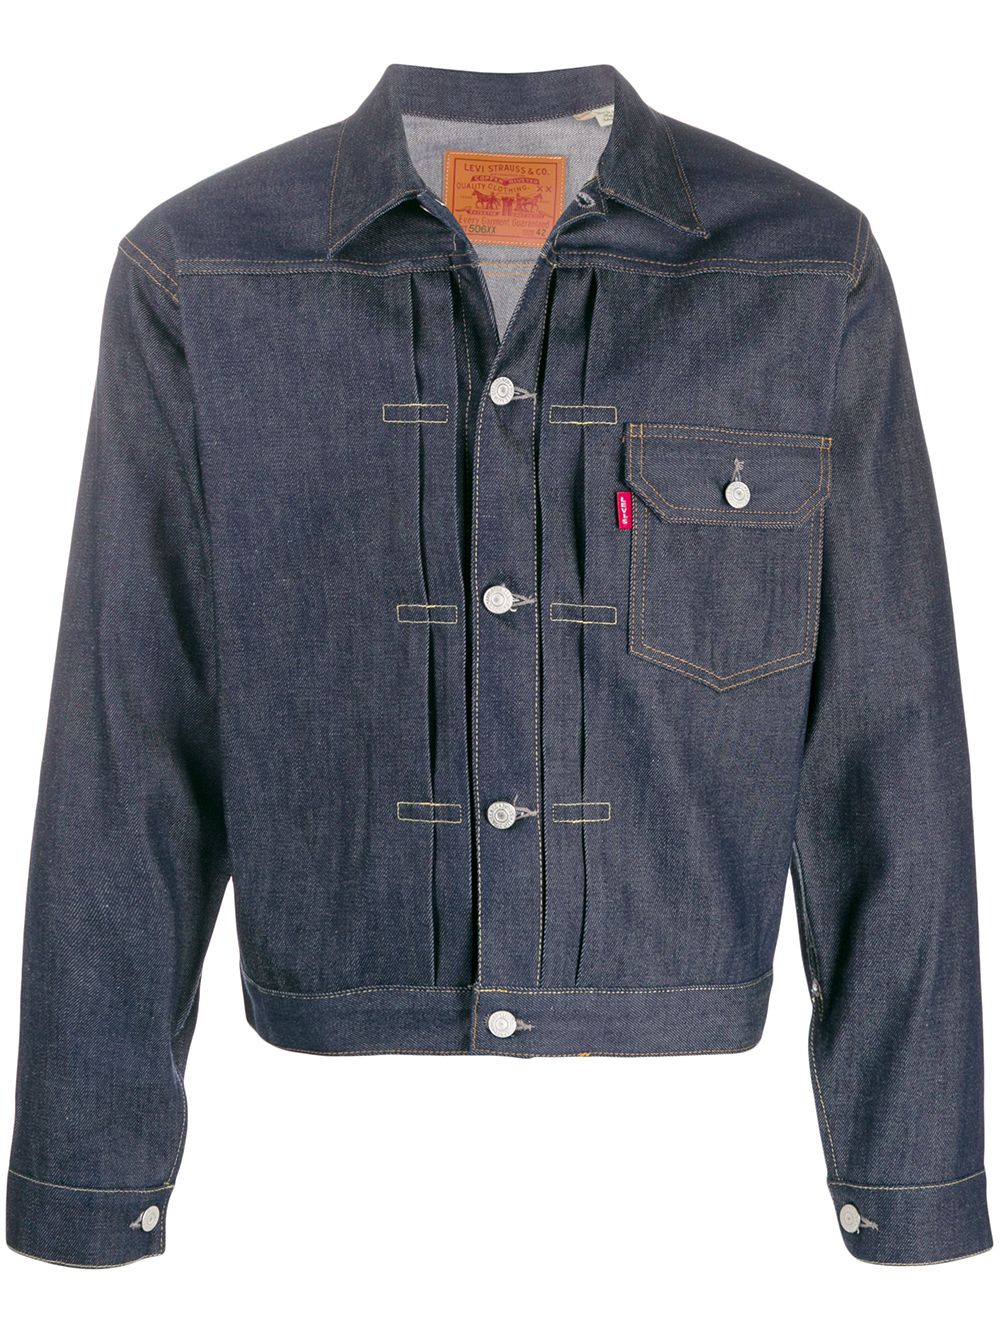 фото Levi's Vintage Clothing джинсовая куртка 1936 Type I